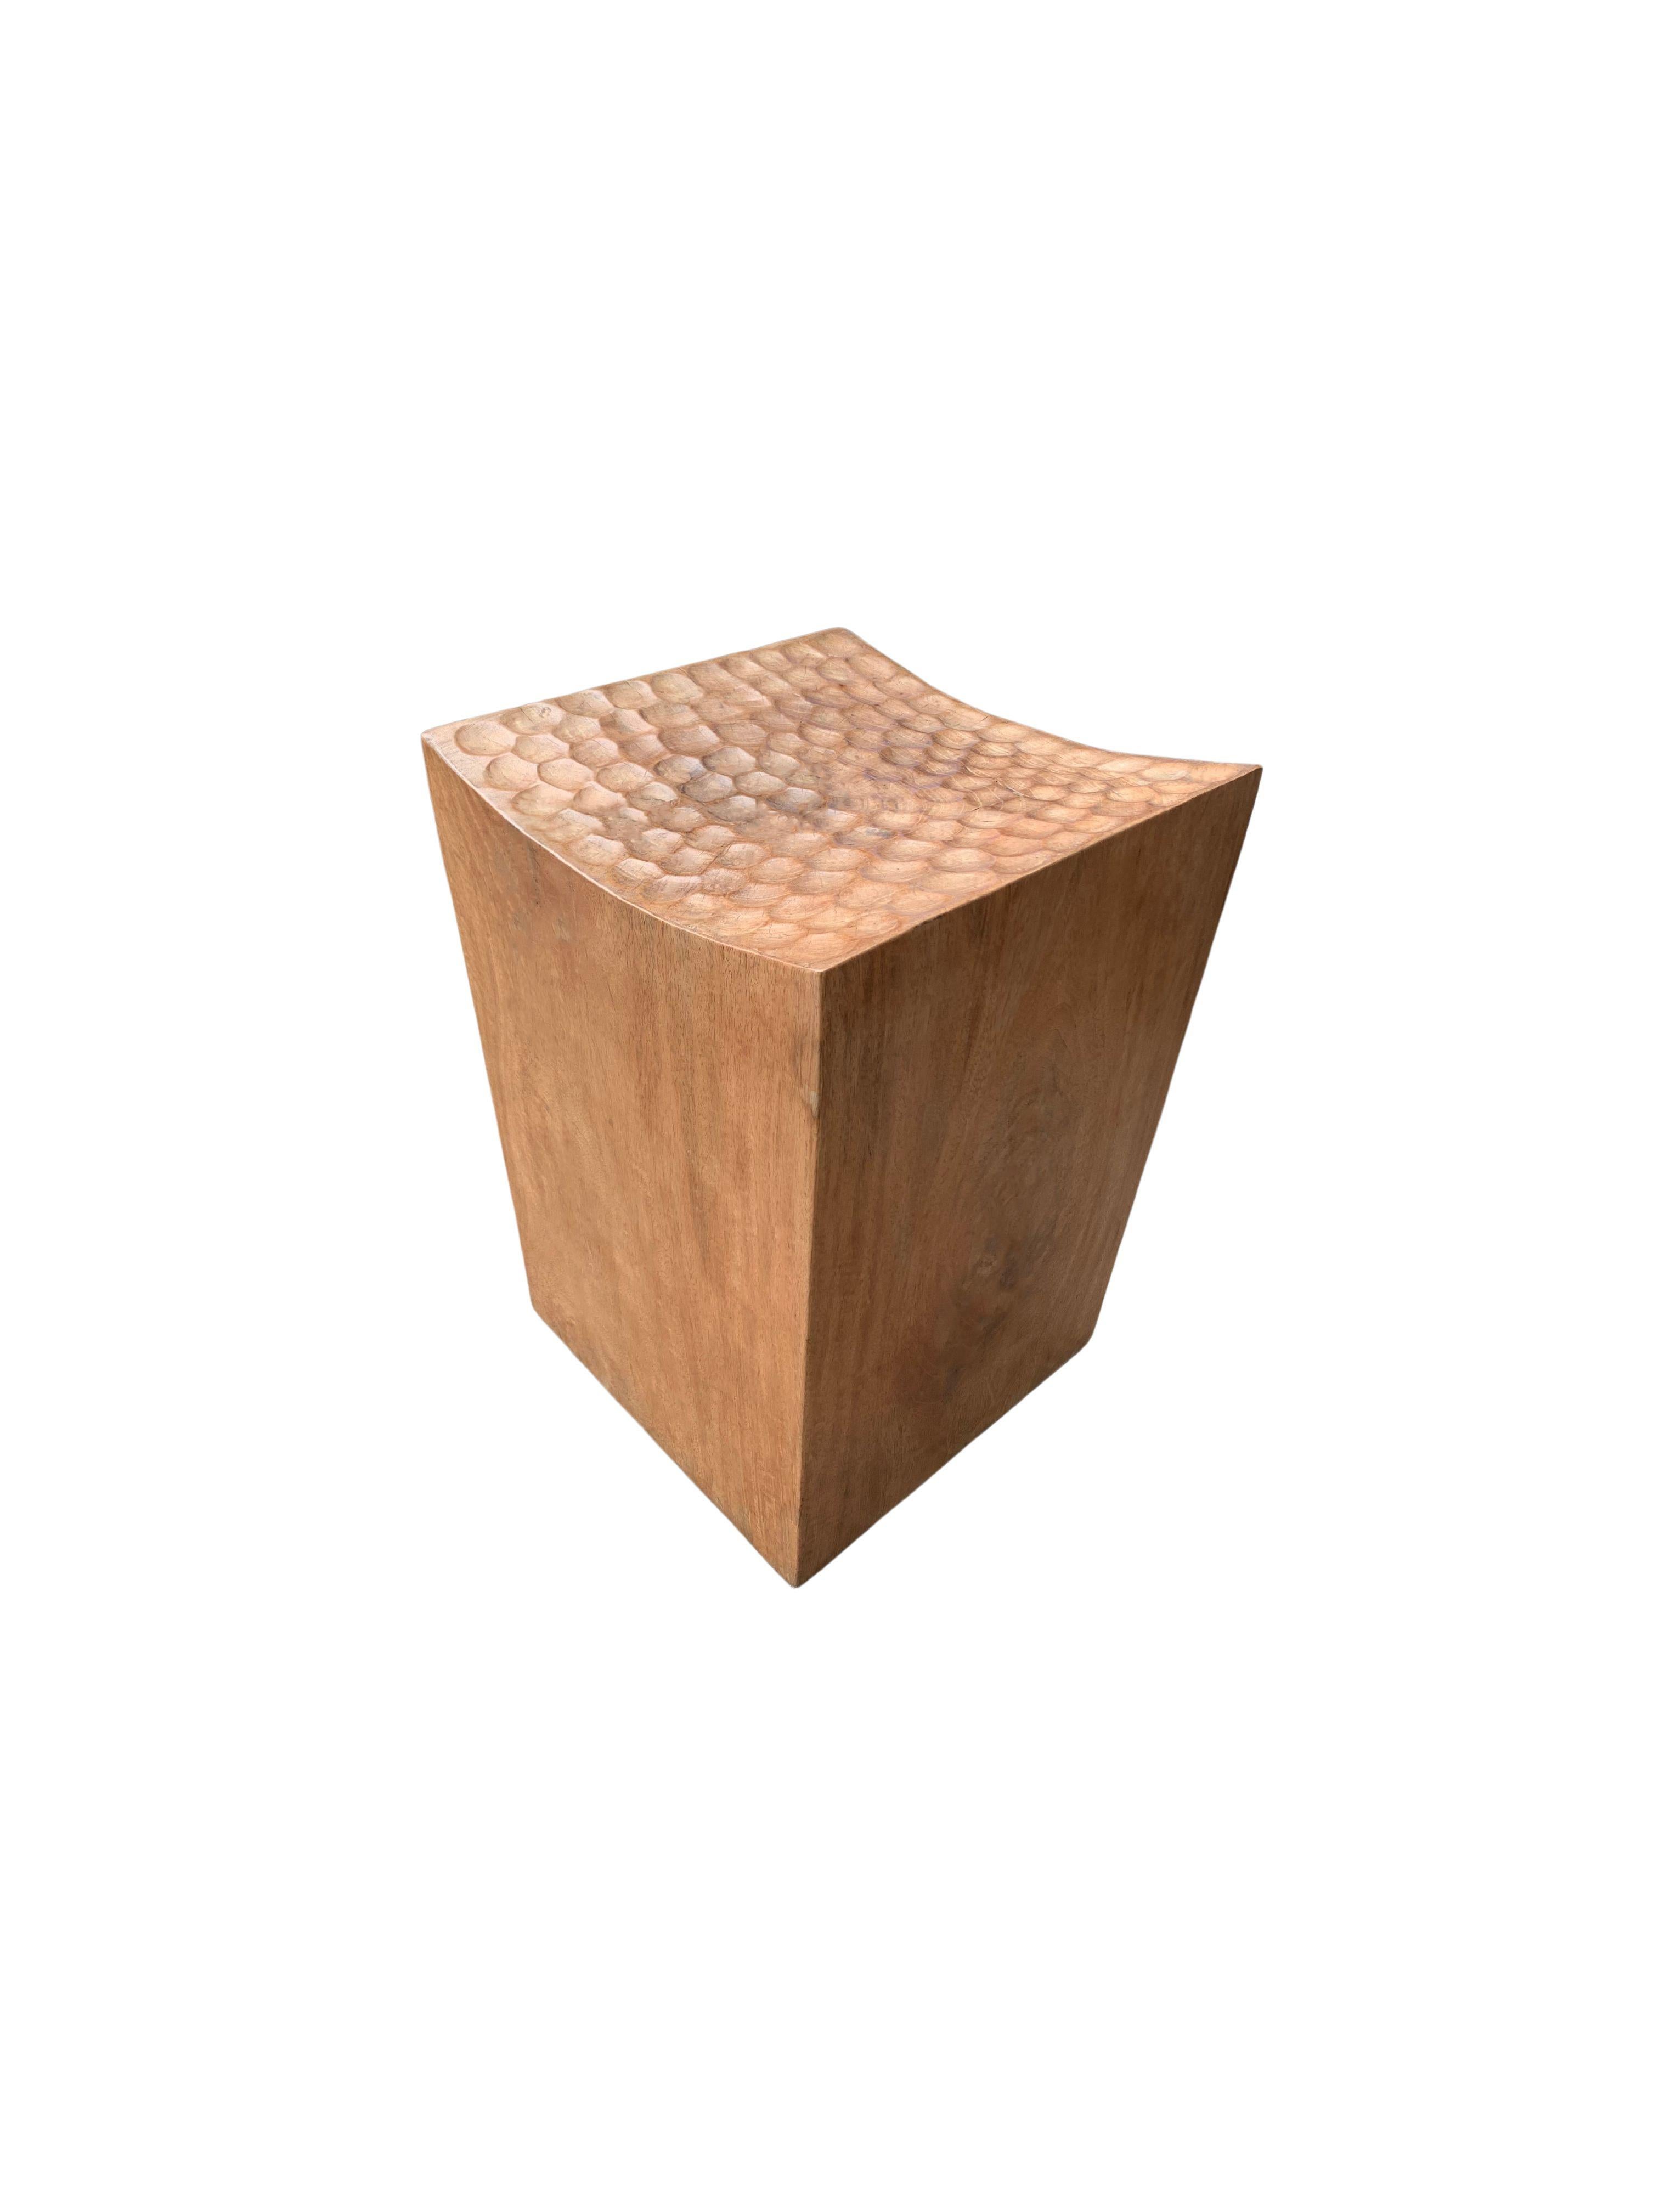 Ein wunderbar skulpturaler Hocker mit einer Mischung aus Holztexturen und -tönen. Dieser einzigartig skulpturale und vielseitige Stuhl wurde aus einem einzigen Block Mangoholz gefertigt und hat eine glatte Maserung. Sorgfältig geschnitzt,